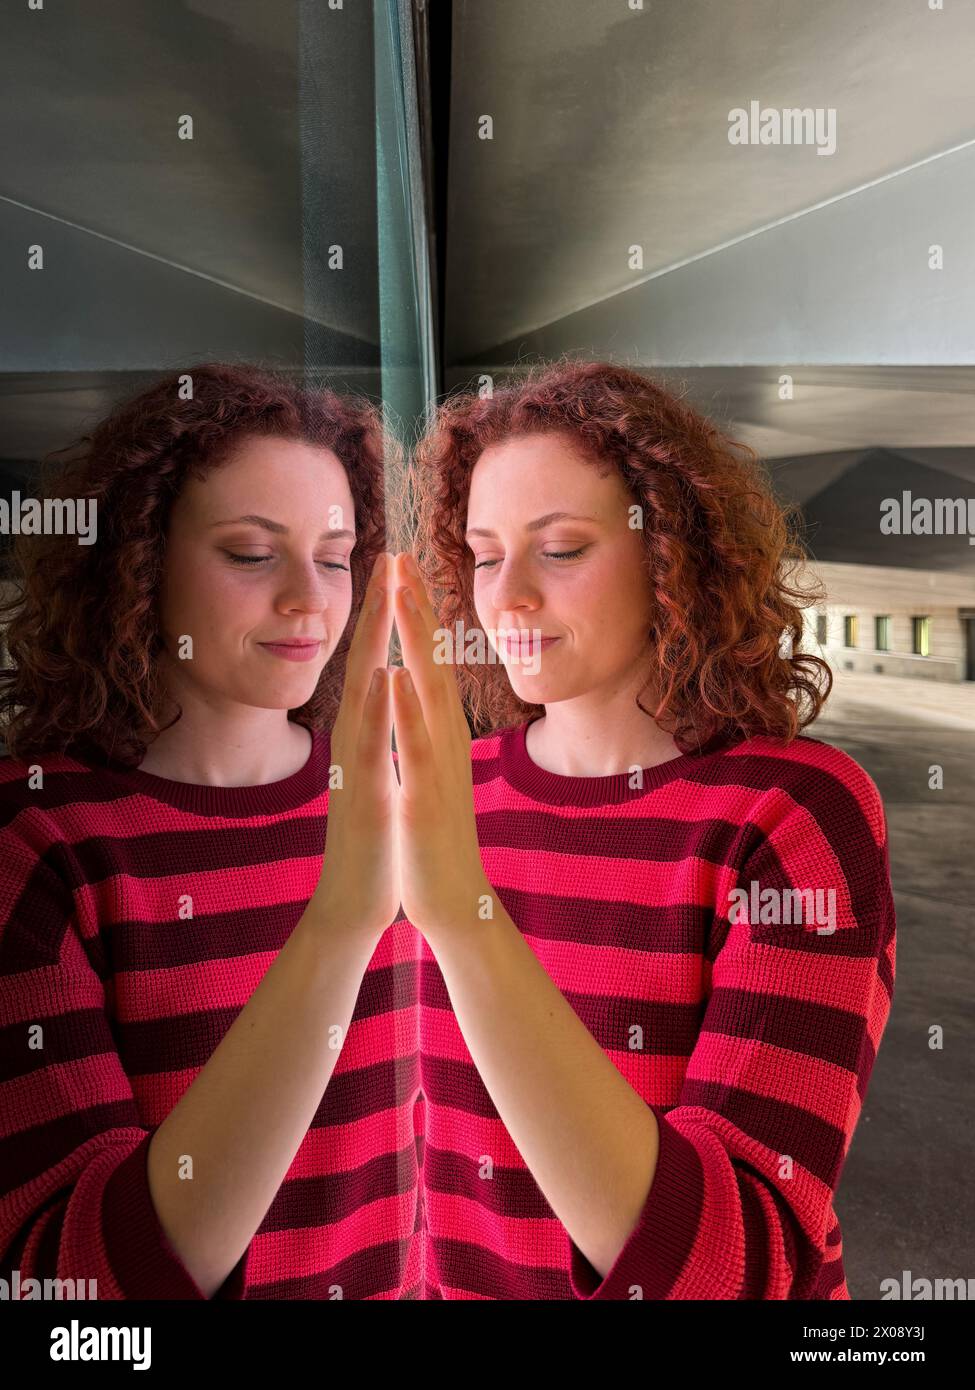 Una donna rossa con una camicia a righe rosse che si riflette su una superficie specchiata, creando un'immagine simmetrica Foto Stock